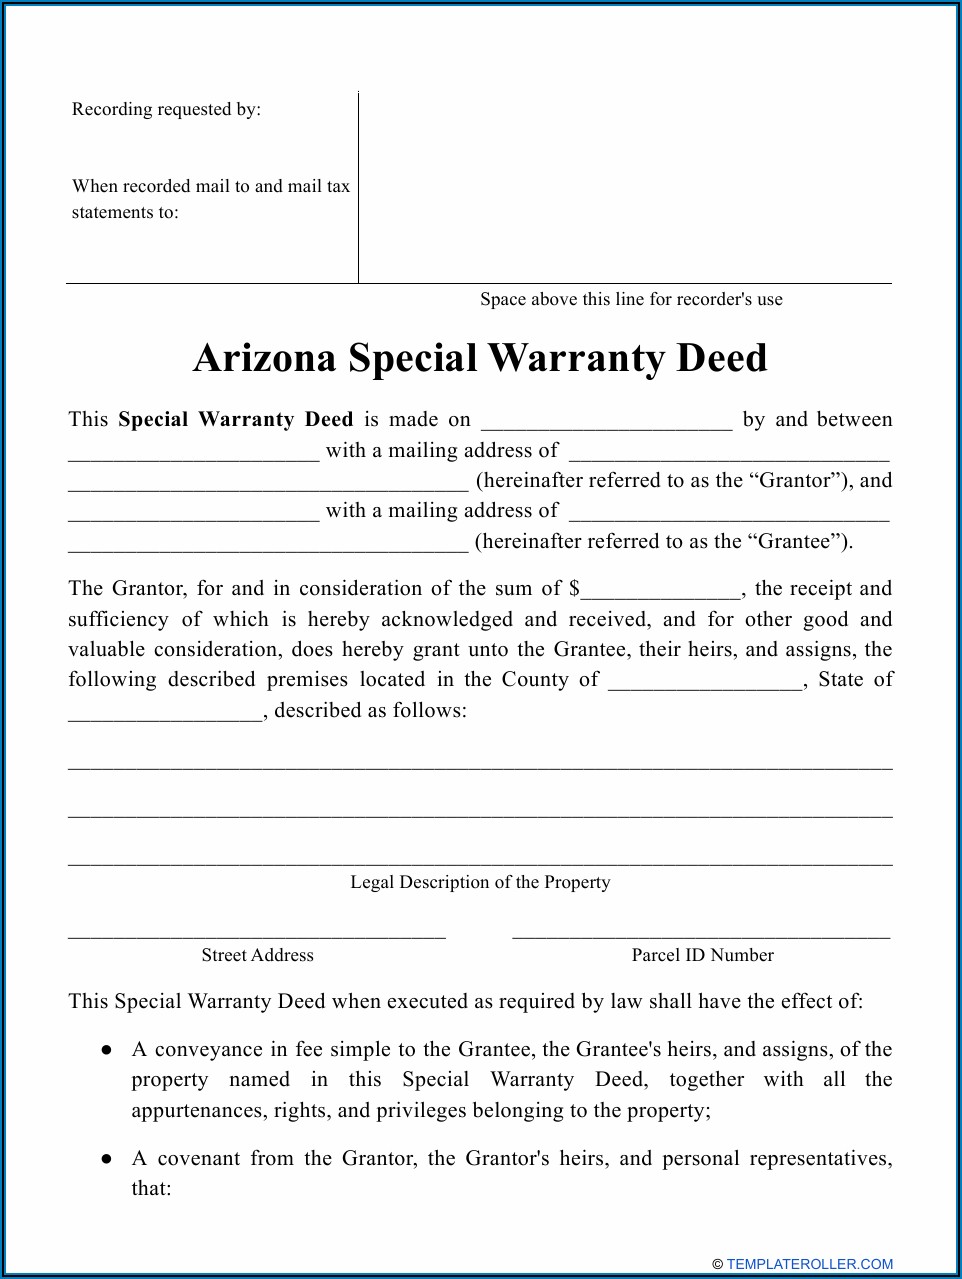 Arizona Special Warranty Deed Form